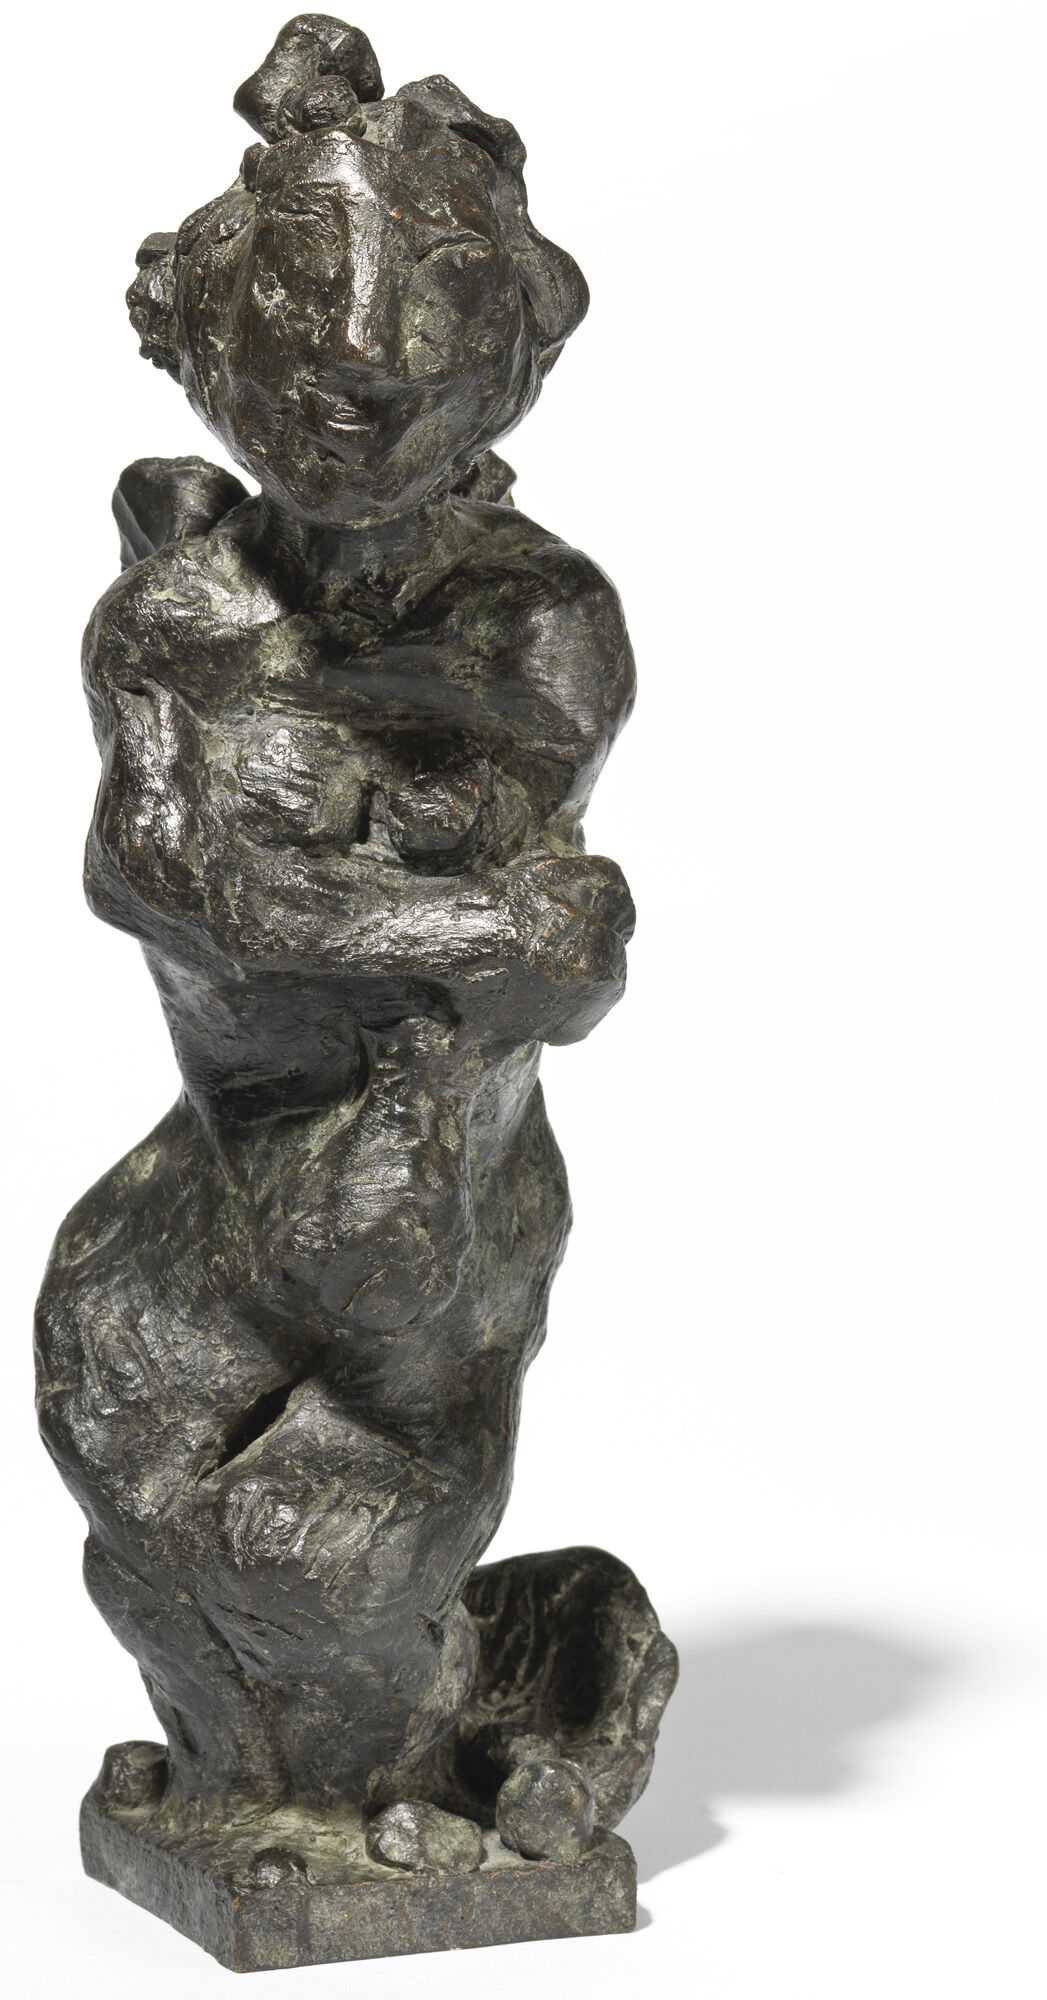 Sculpture "Aphrodite" (2000) by Markus Lüpertz